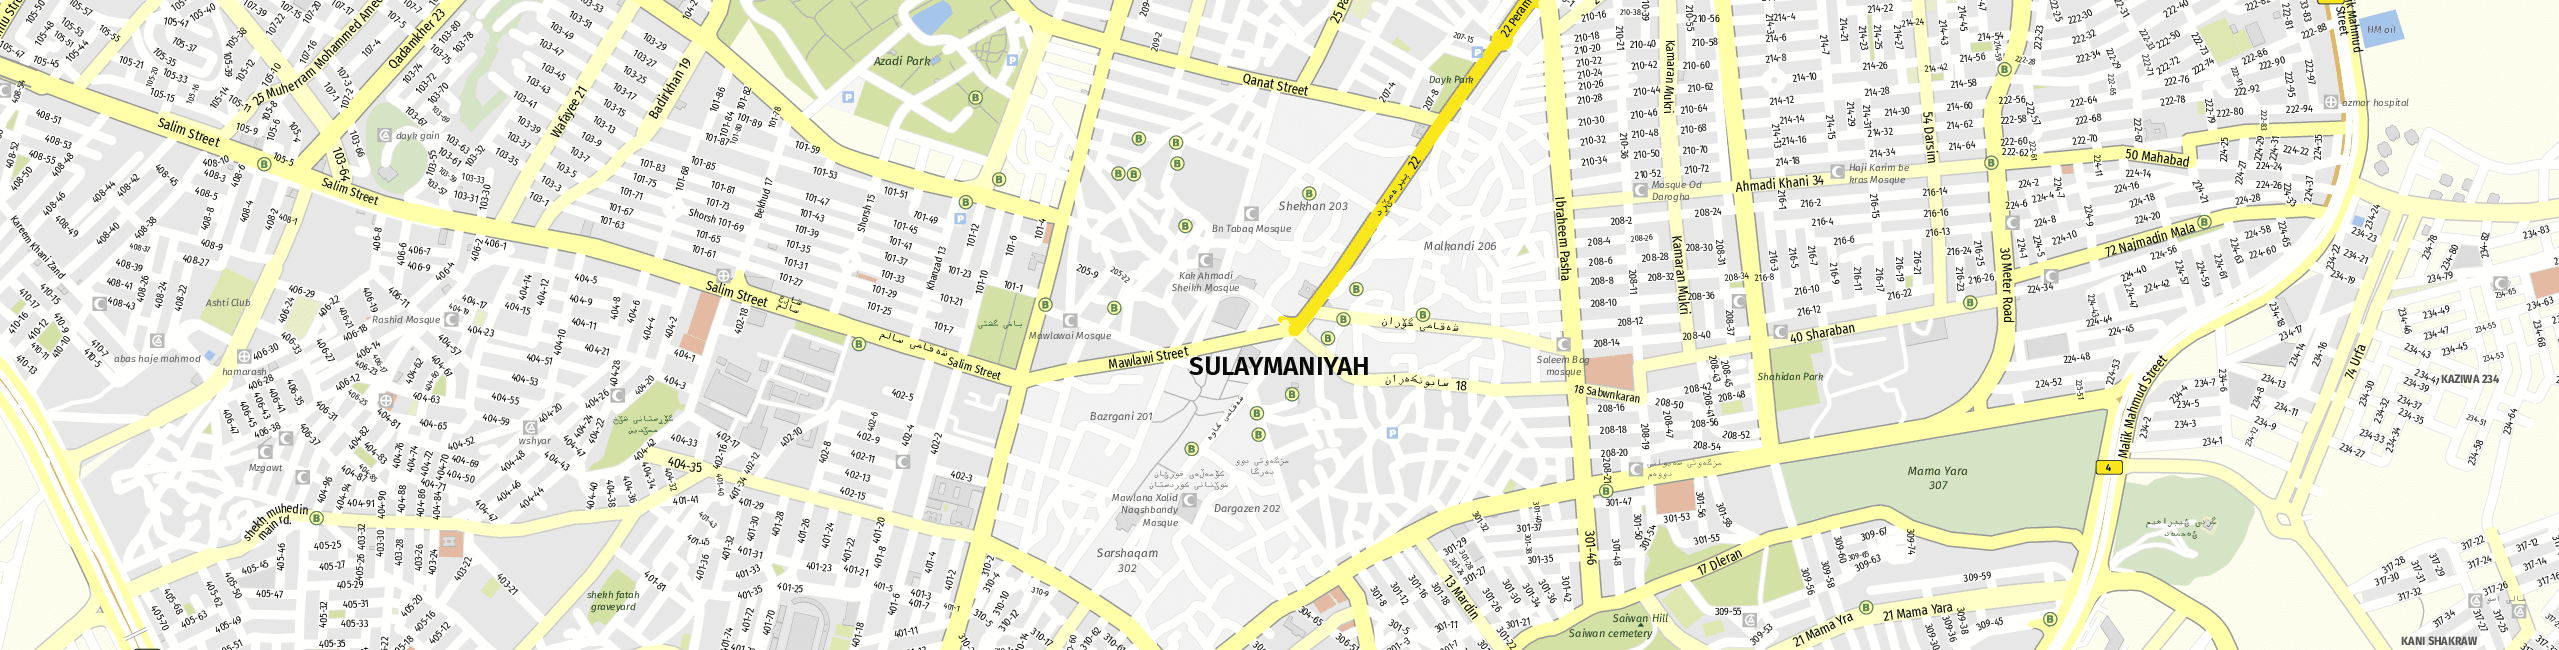 Stadtplan Sulaymaniyah zum Downloaden.